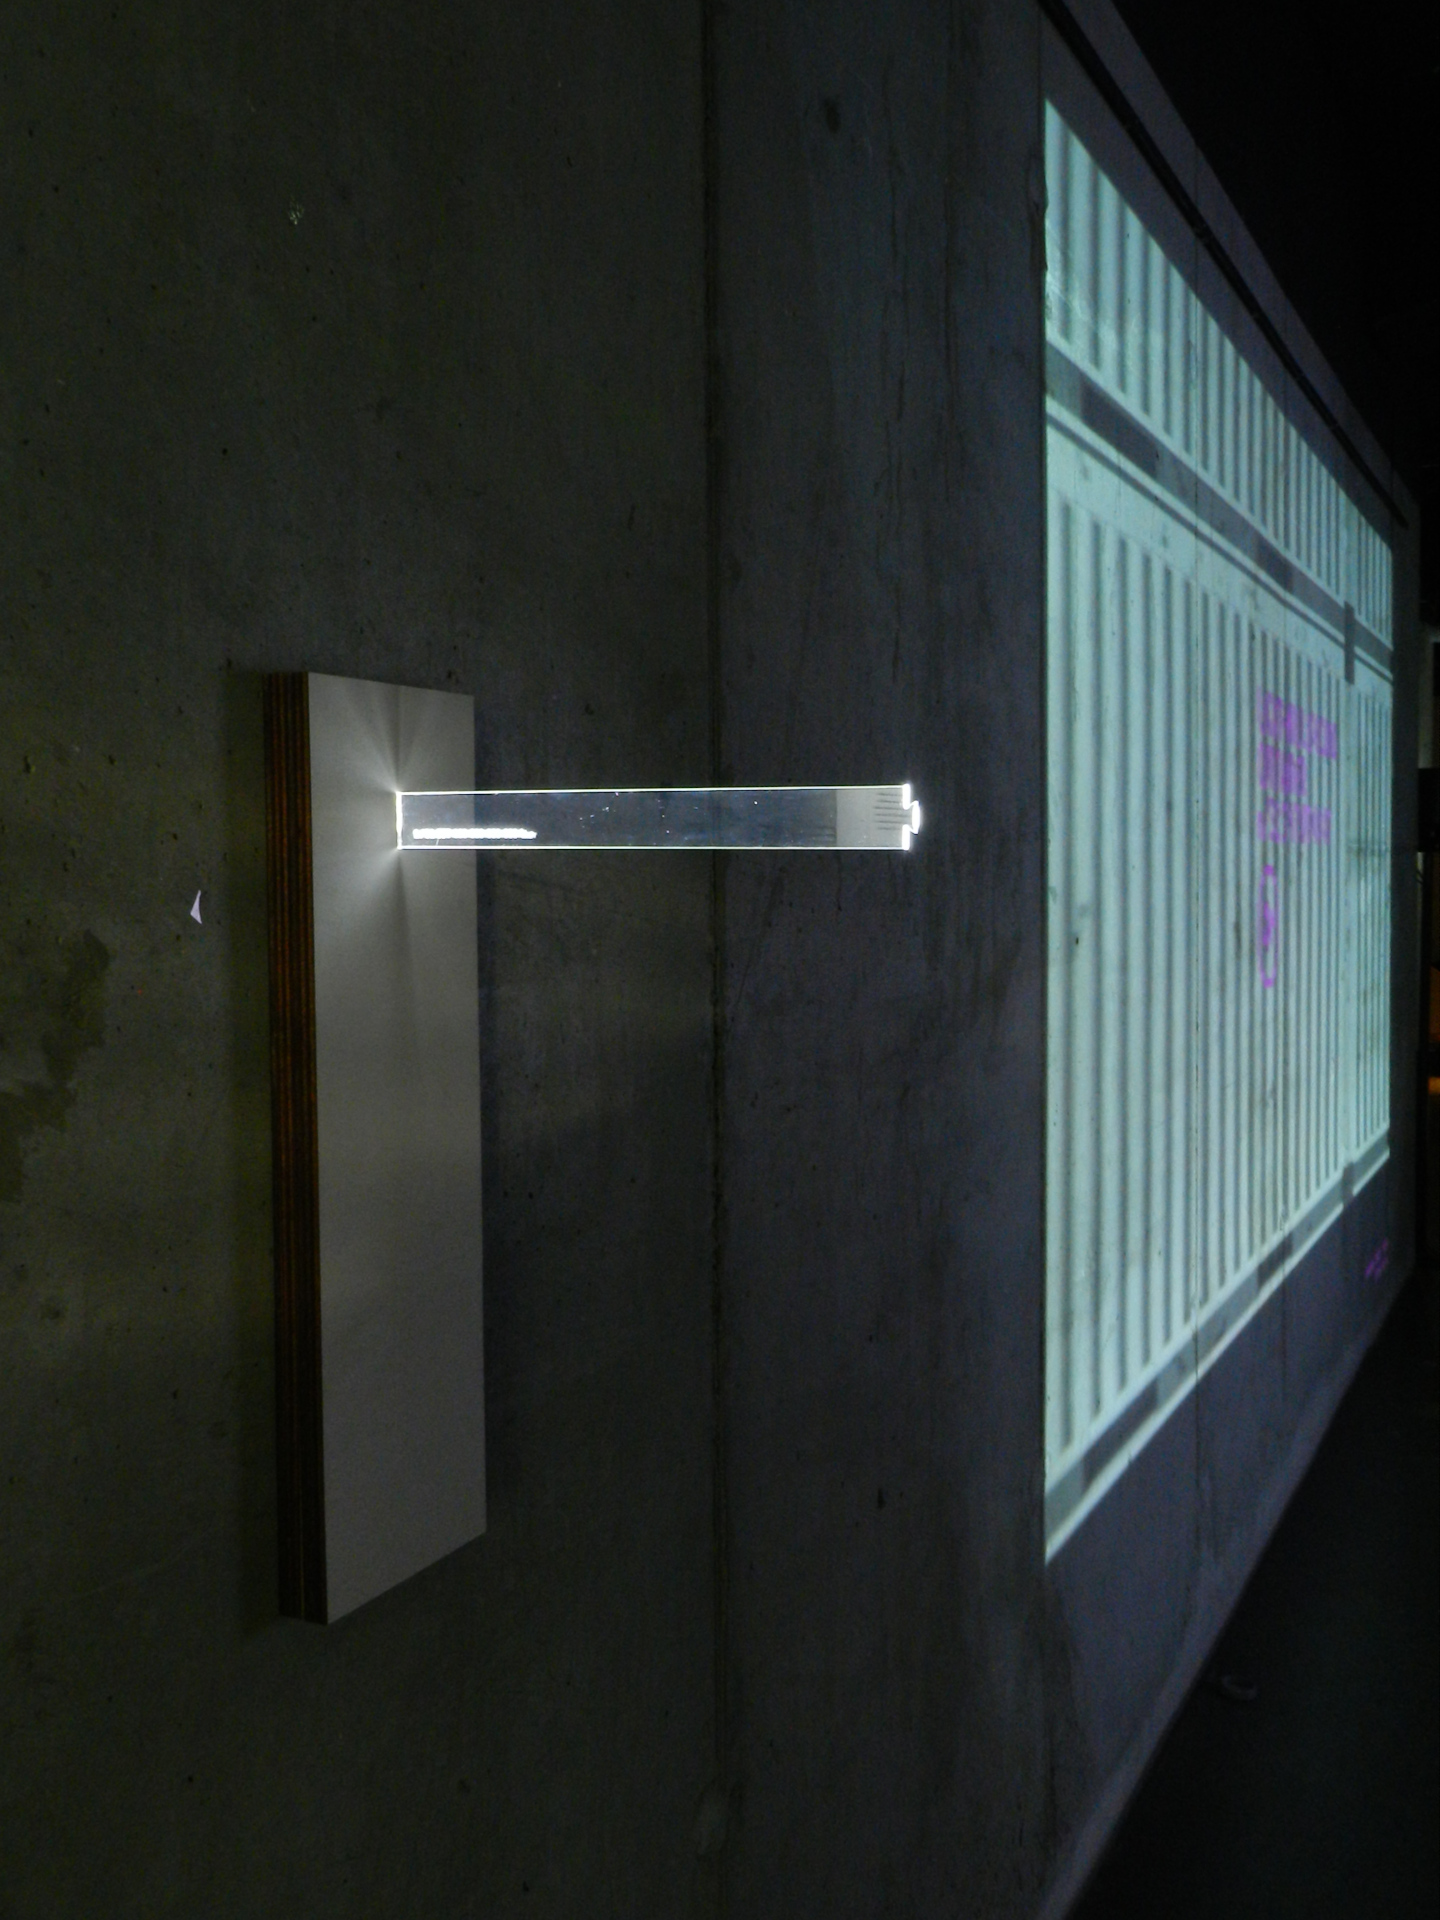 Image 3 : Règle en plexi traversée par un faisceau lumineux